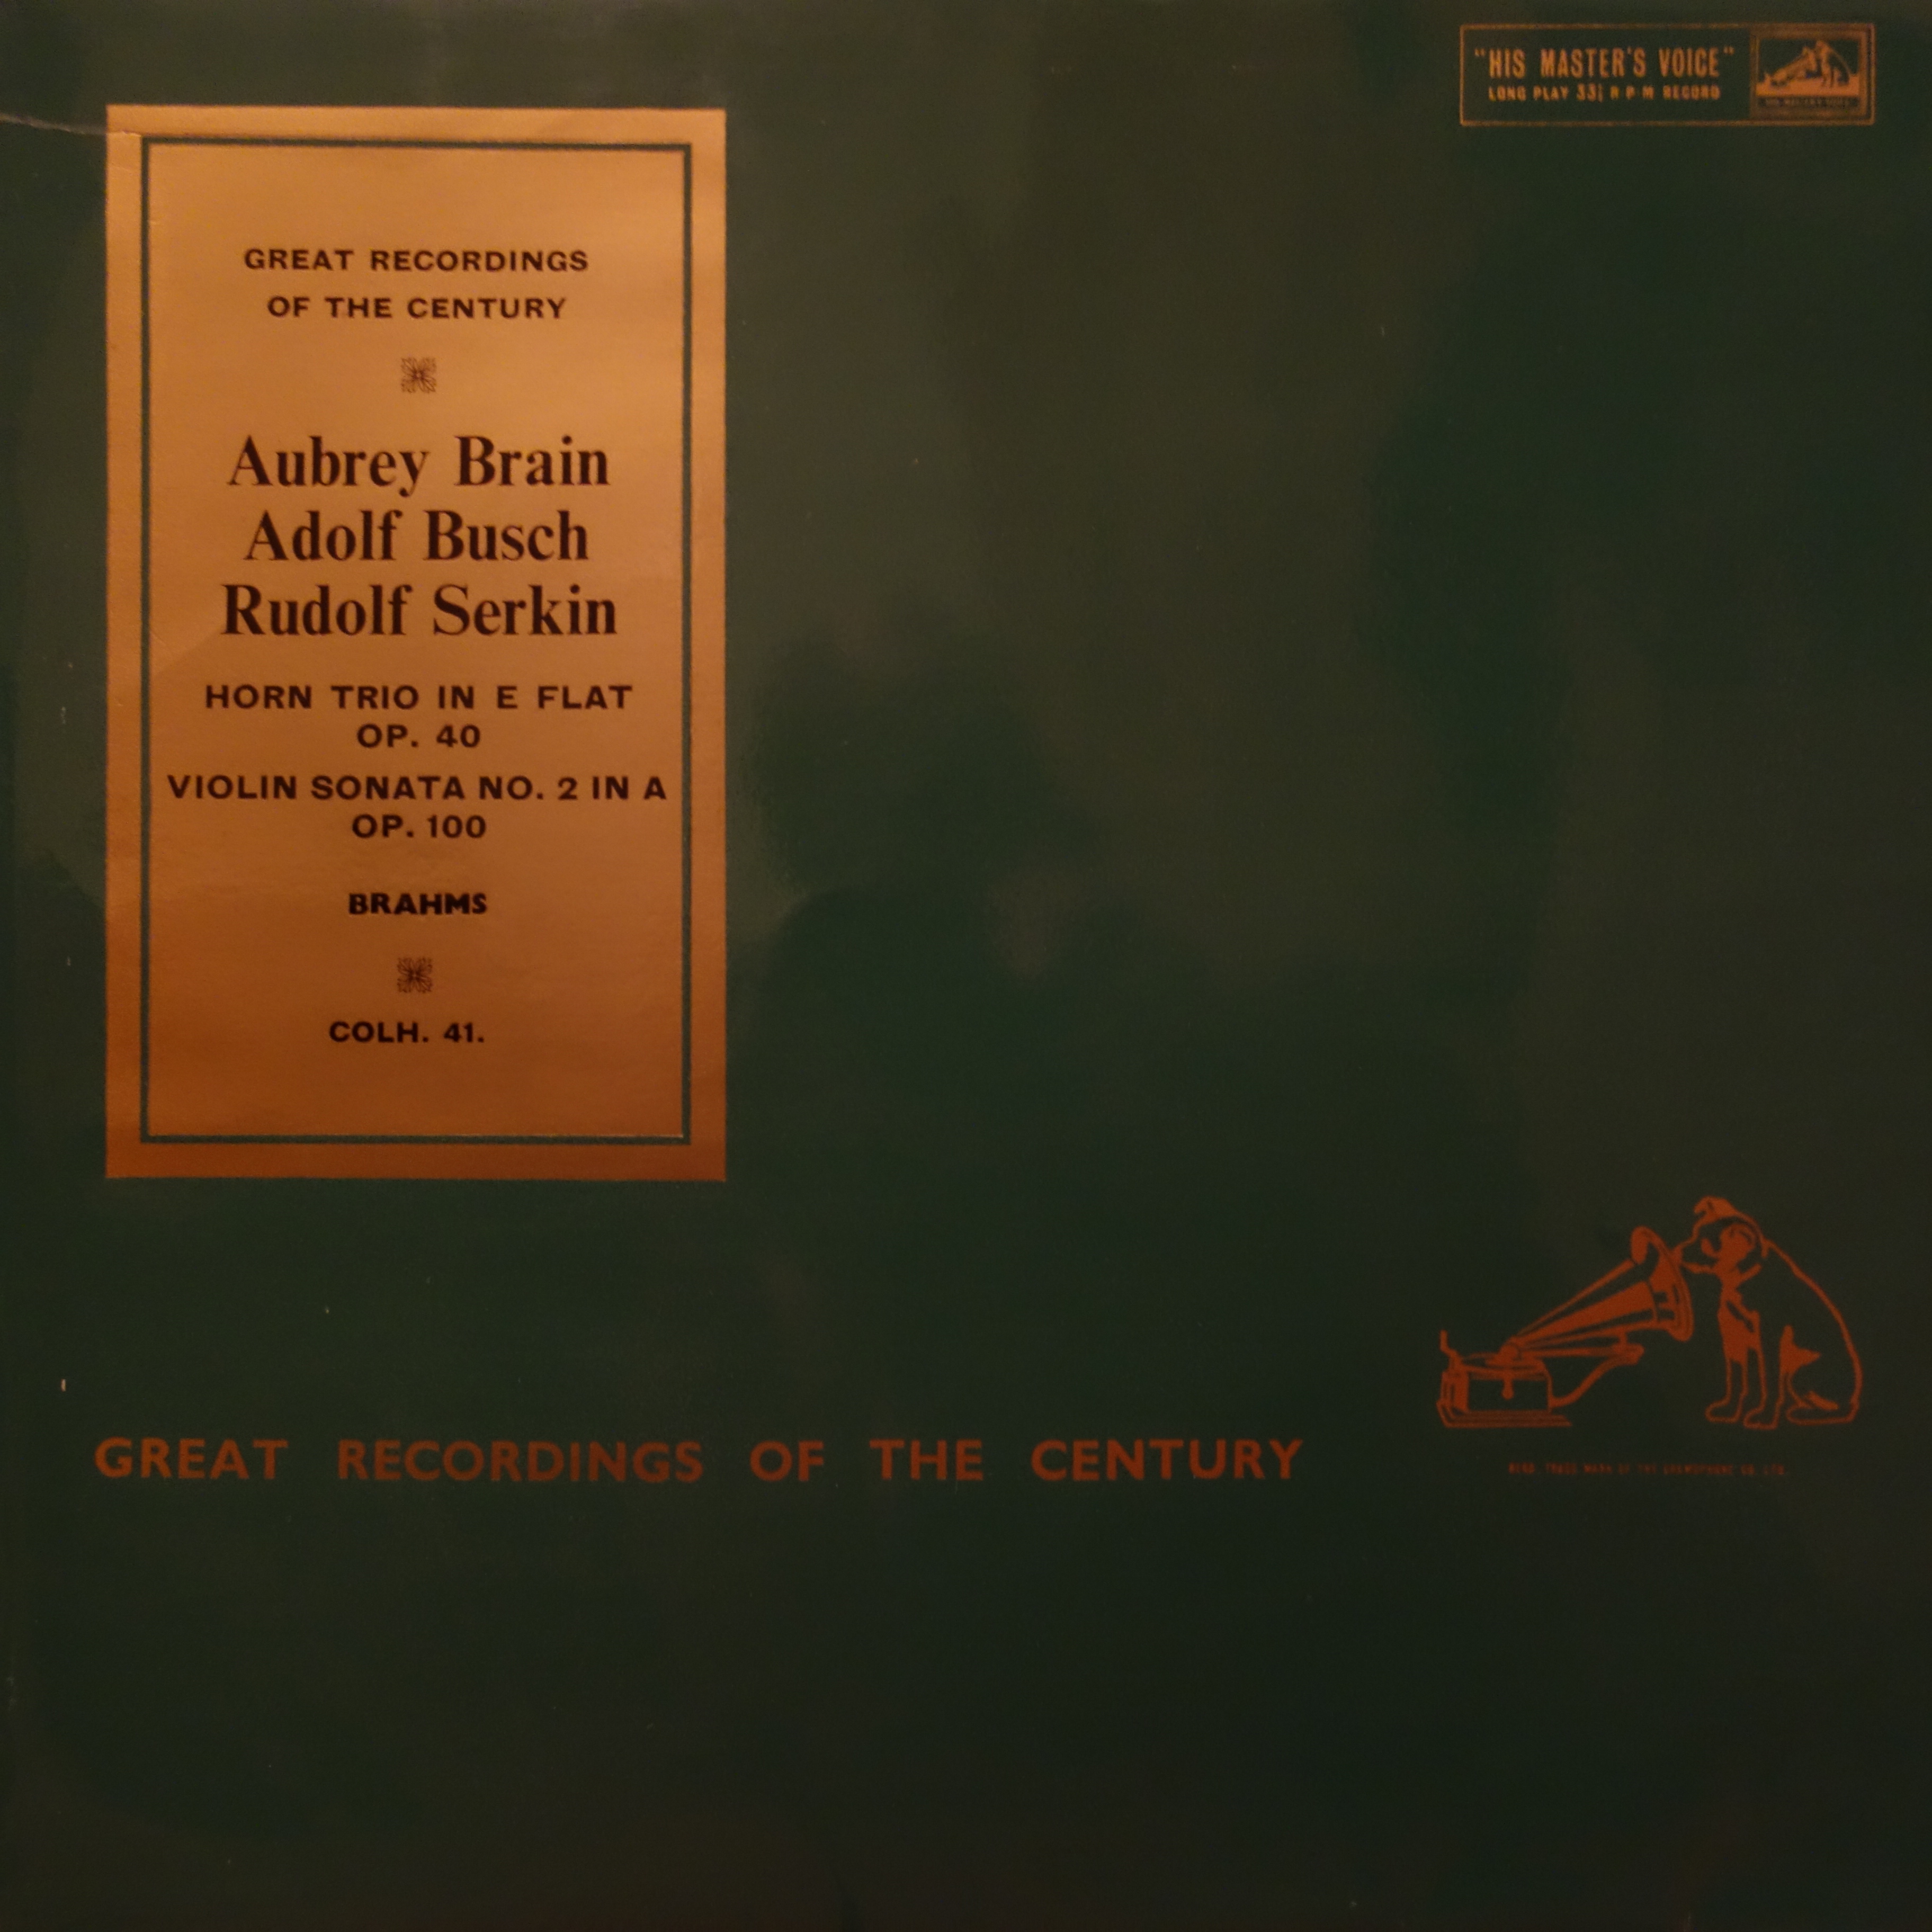 COLH 41 Brahms Horn Trio / Violin Sonata No.2 in A Op. 100 / Brian / Busch Serkin